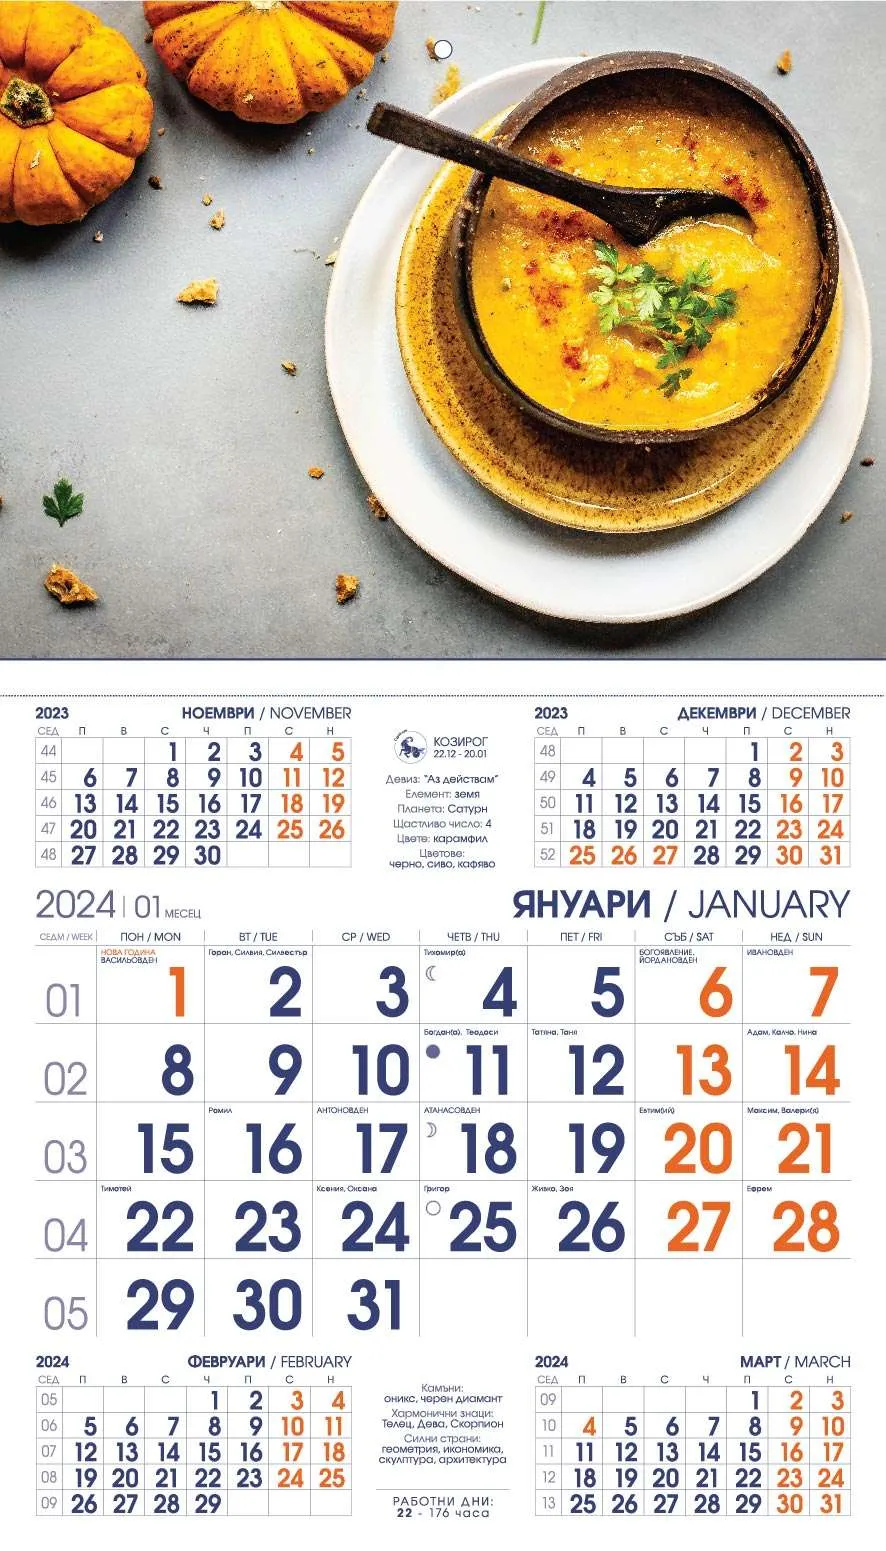 Работен календар за 2015 година